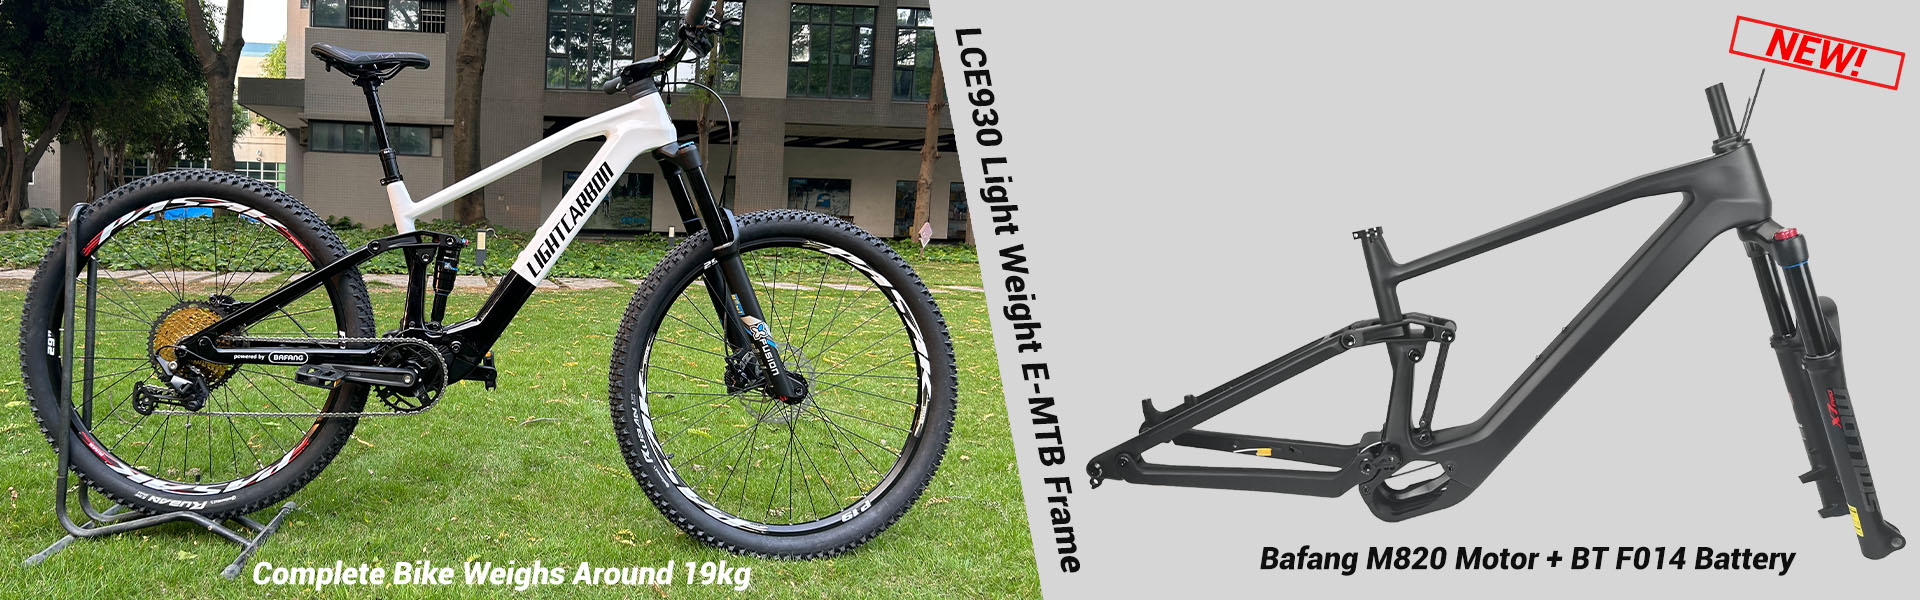 E-Bike Frame Bafang M820 E-MTB Carbon Frame For All Mountain